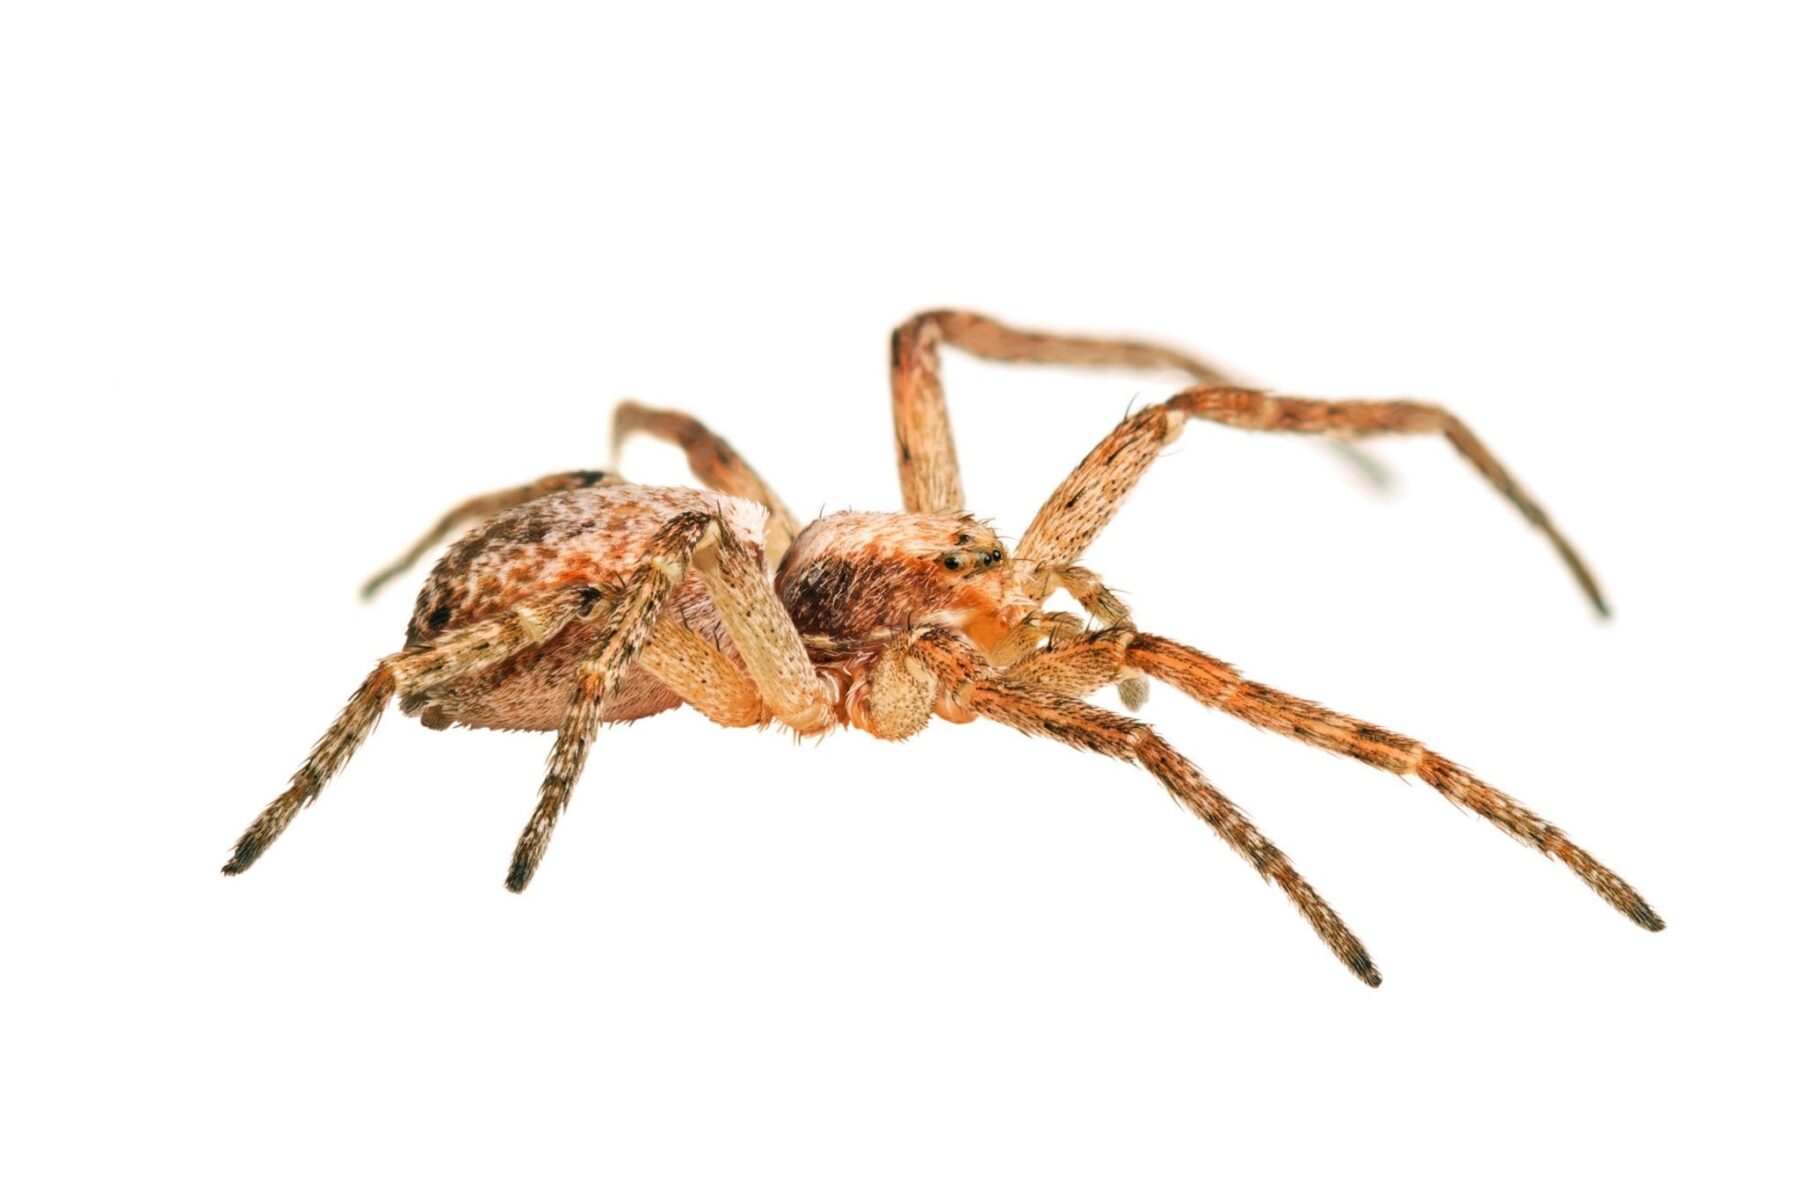 Philodromid crab spider